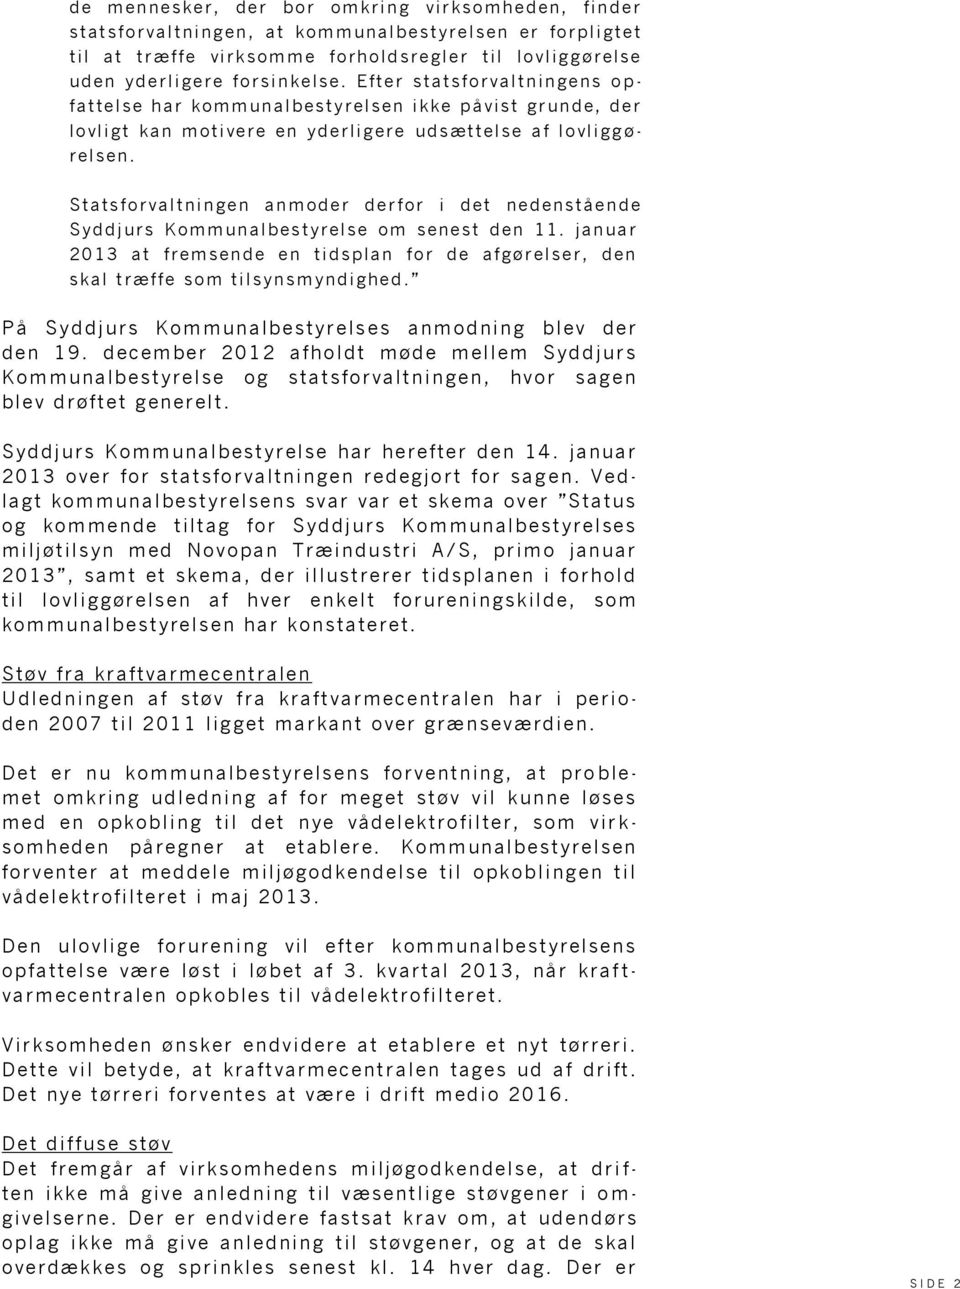 Statsforvaltningen anmoder derfor i det nedenstående Syddjurs Kommunalbestyrelse om senest den 11. januar 2013 at fremsende en tidsplan for de afgørelser, den skal t ræffe som tilsynsmyndighed.